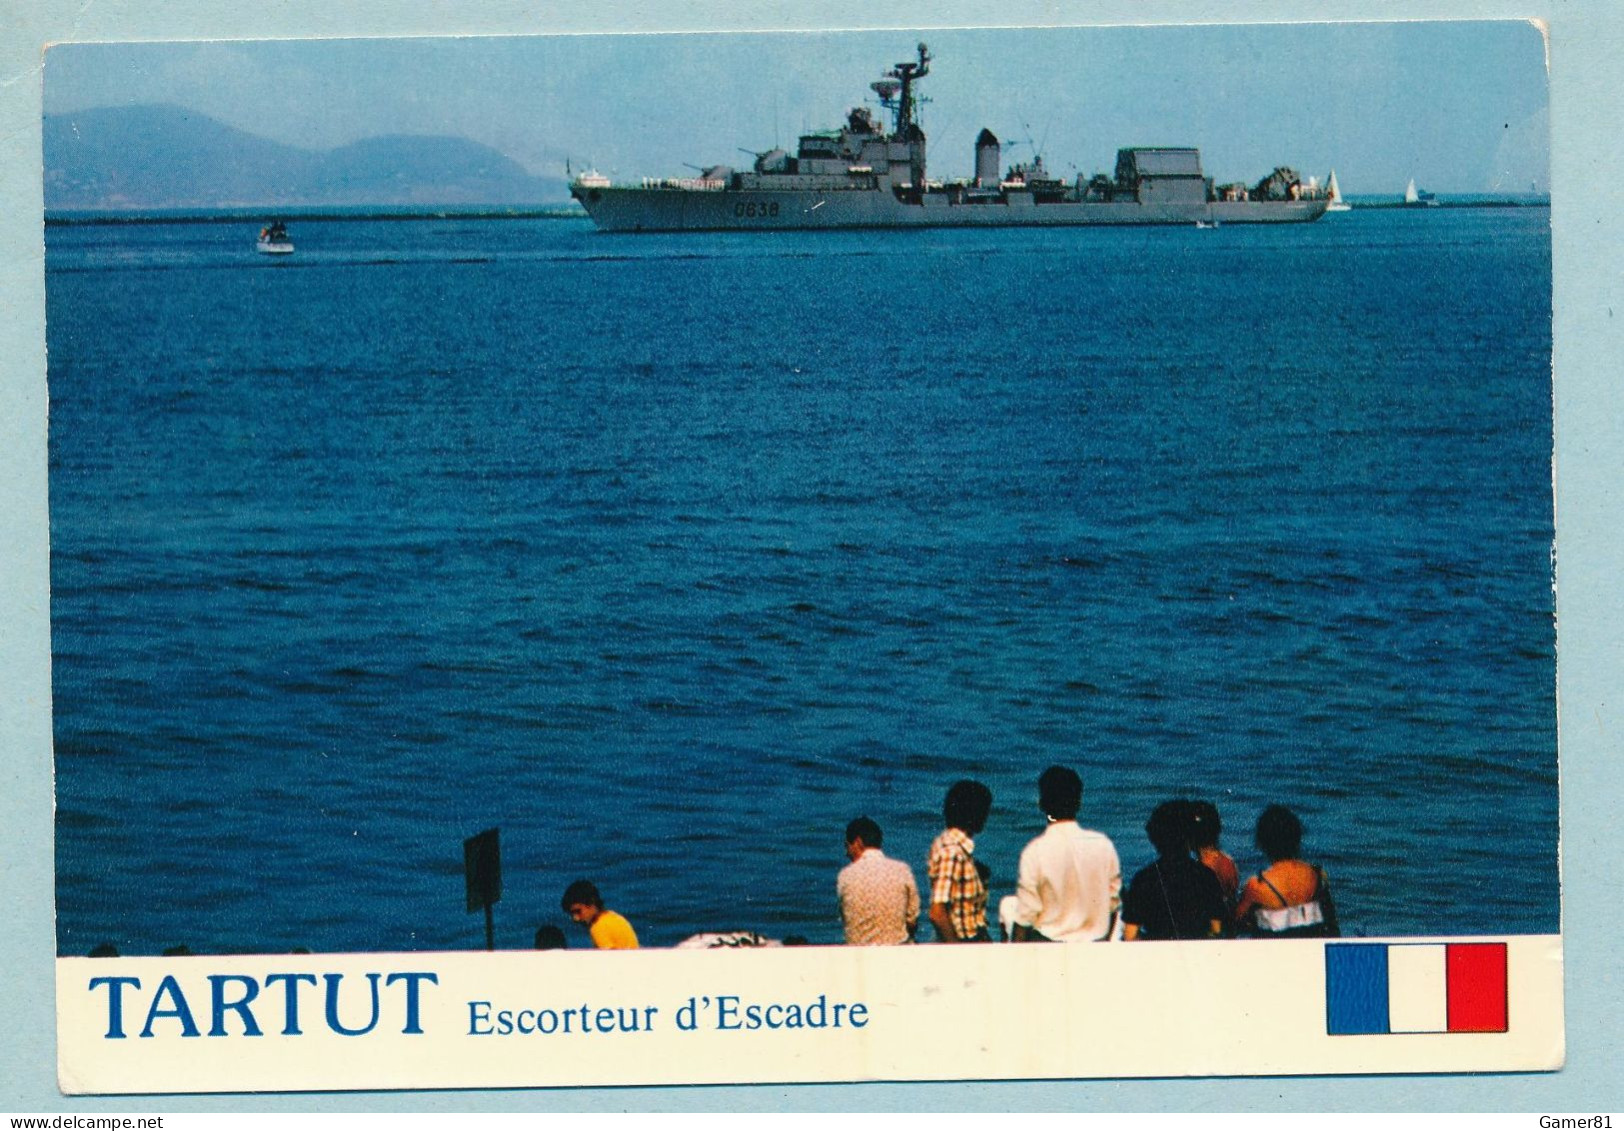 TARTUT Escorteur D'Escadre 2750 Tonnes à TOULON Revue Navale 11/07/1976 Avec Le Pdt Valéry Giscard D'Estaing - Warships